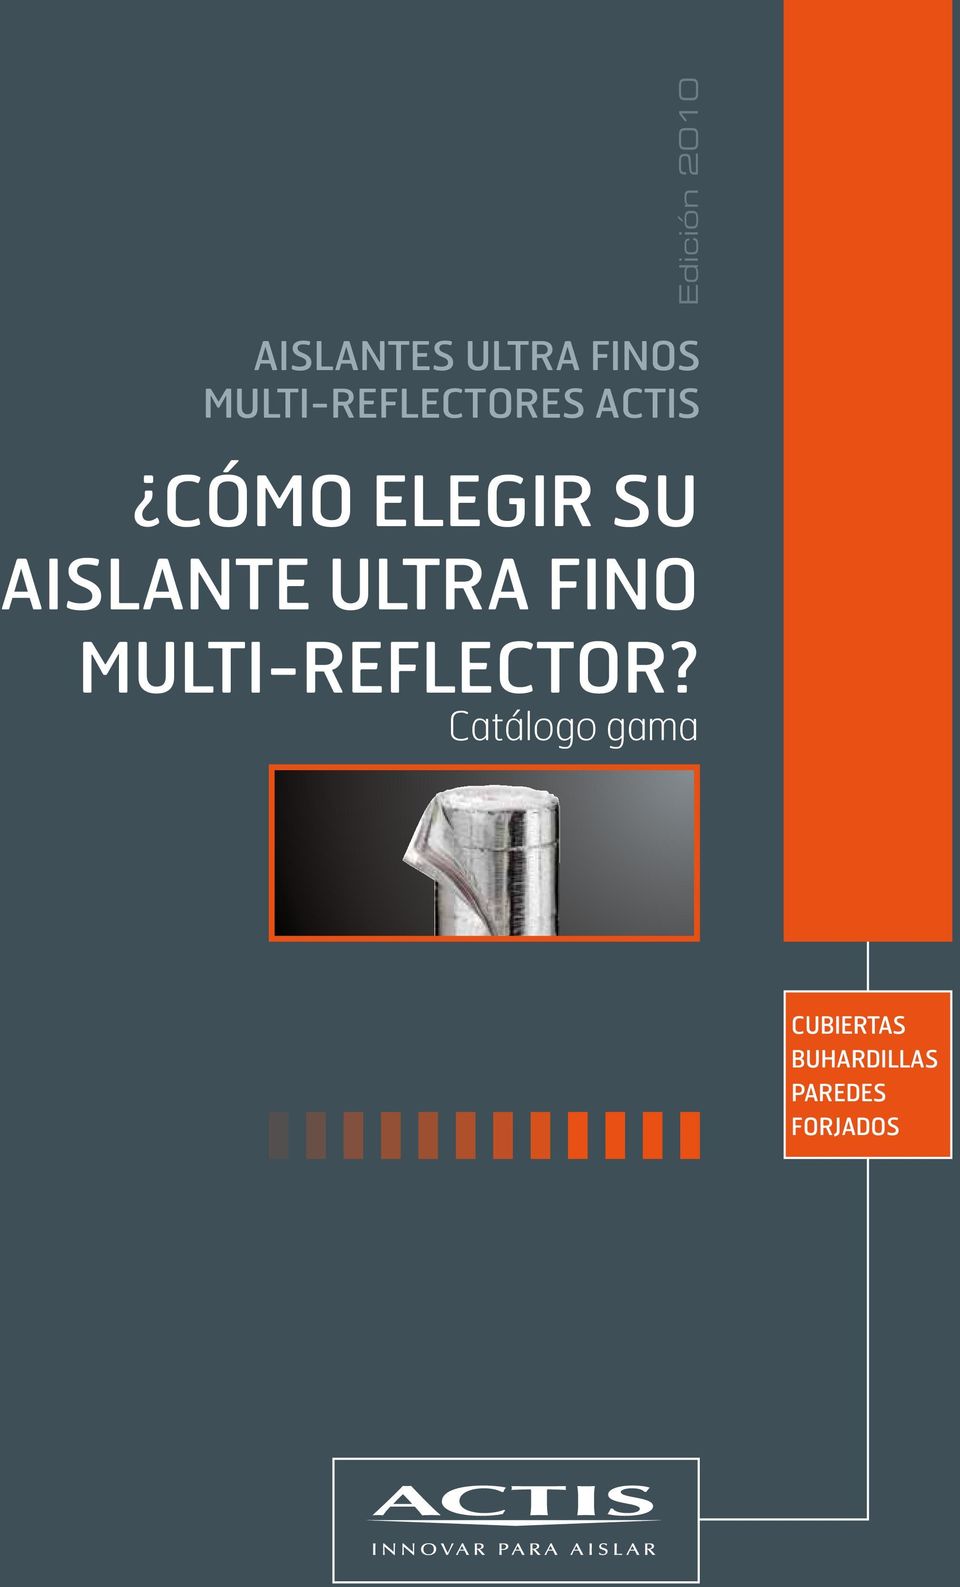 AISLANTE ULTRA FINO MULTI-REFLECTOR?